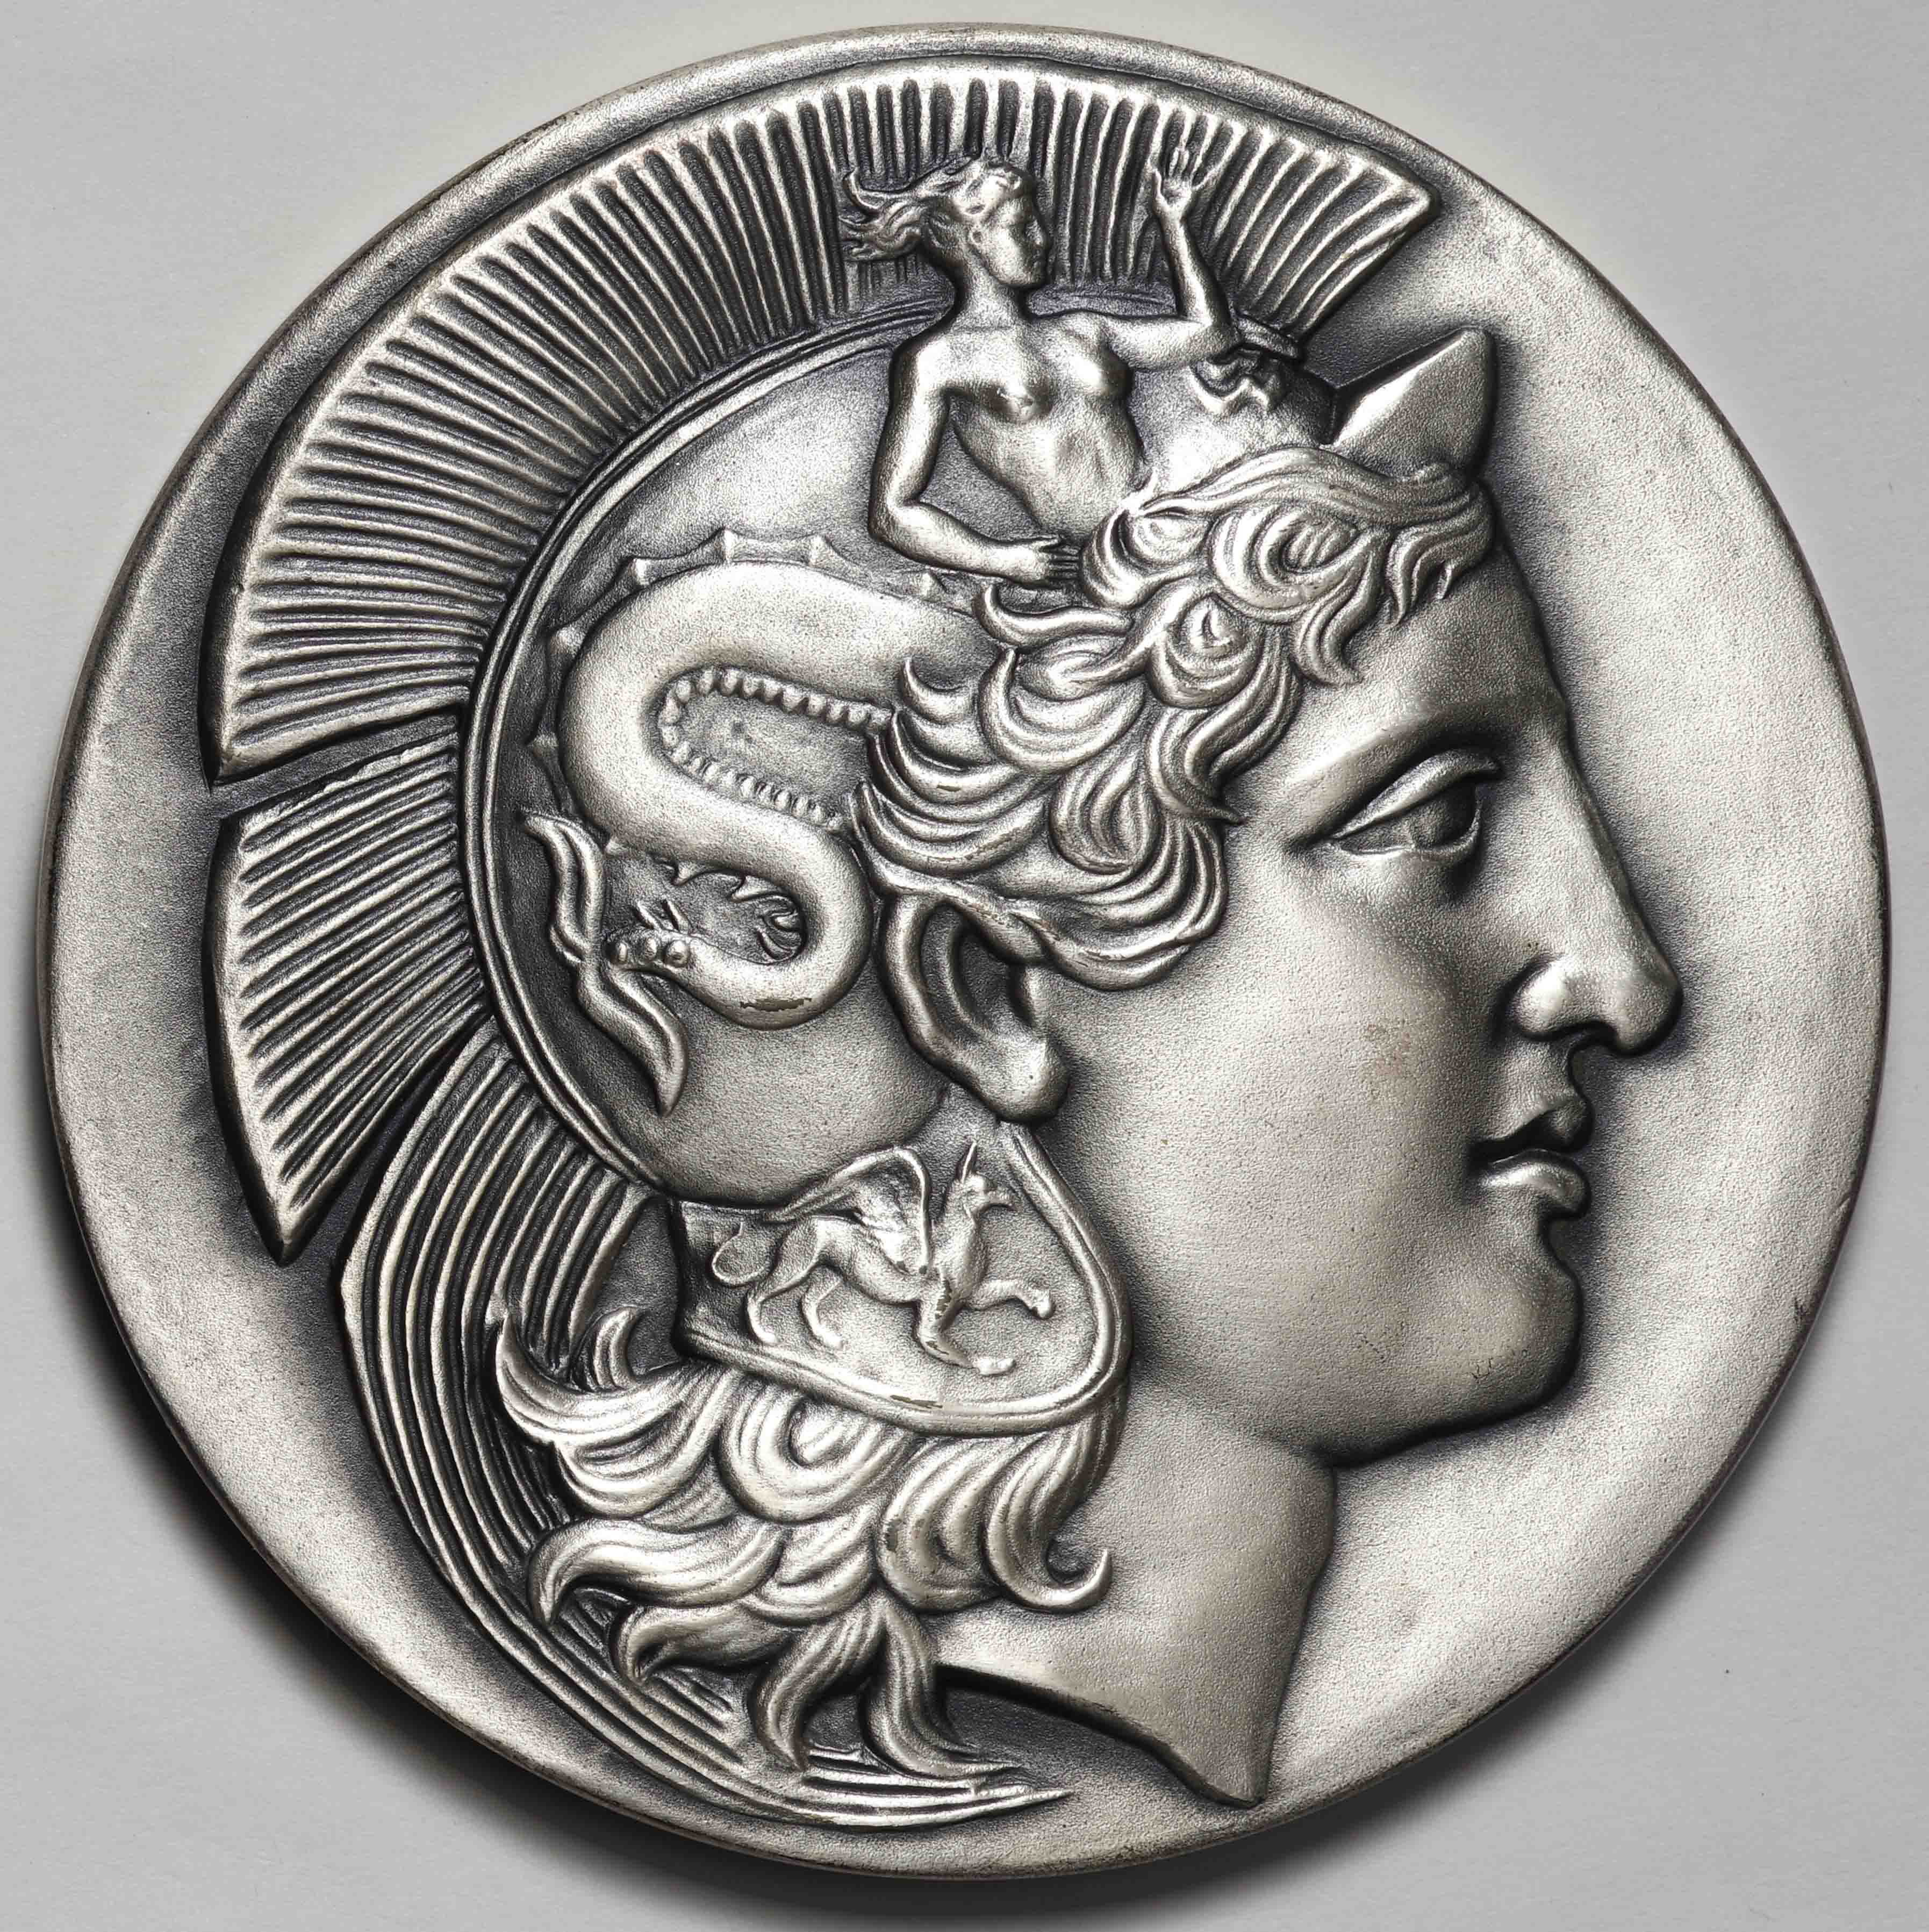 第13回国際貨幣祭り 記念メダル 純銀メダル 造幣局よろしくおねがいします